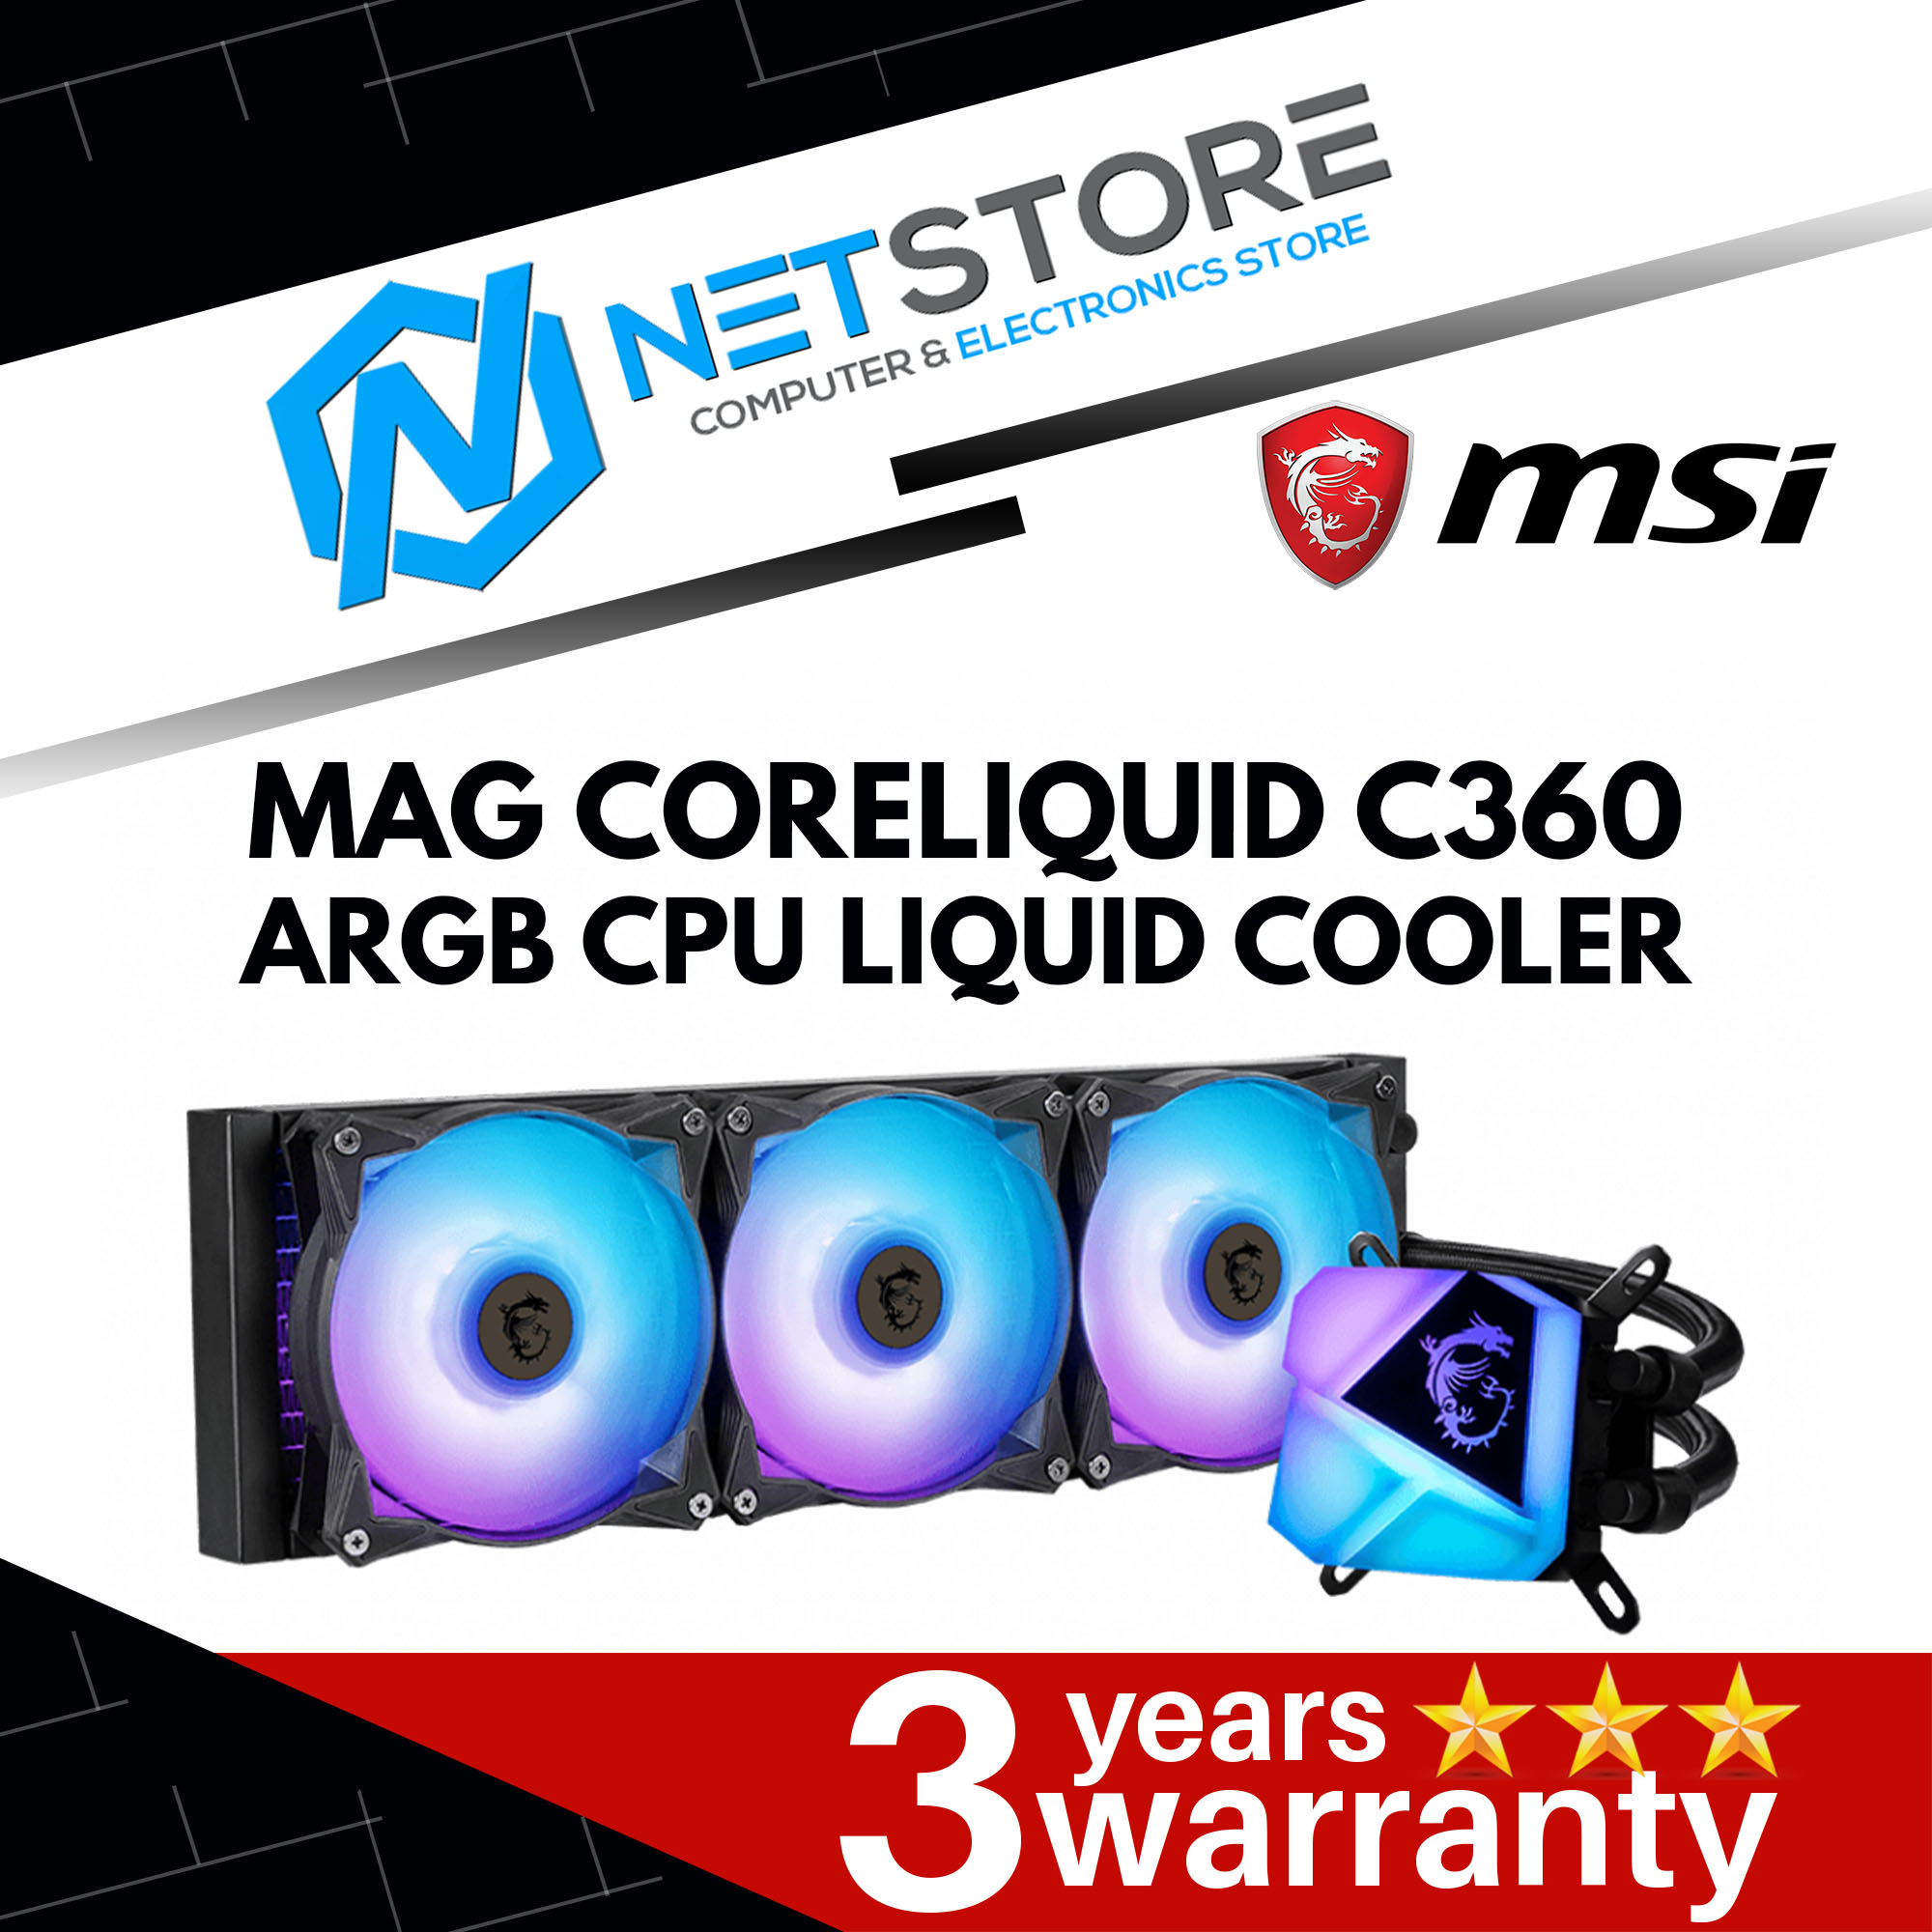 MSI MAG CORELIQUID C360 ARGB CPU LIQUID COOLER